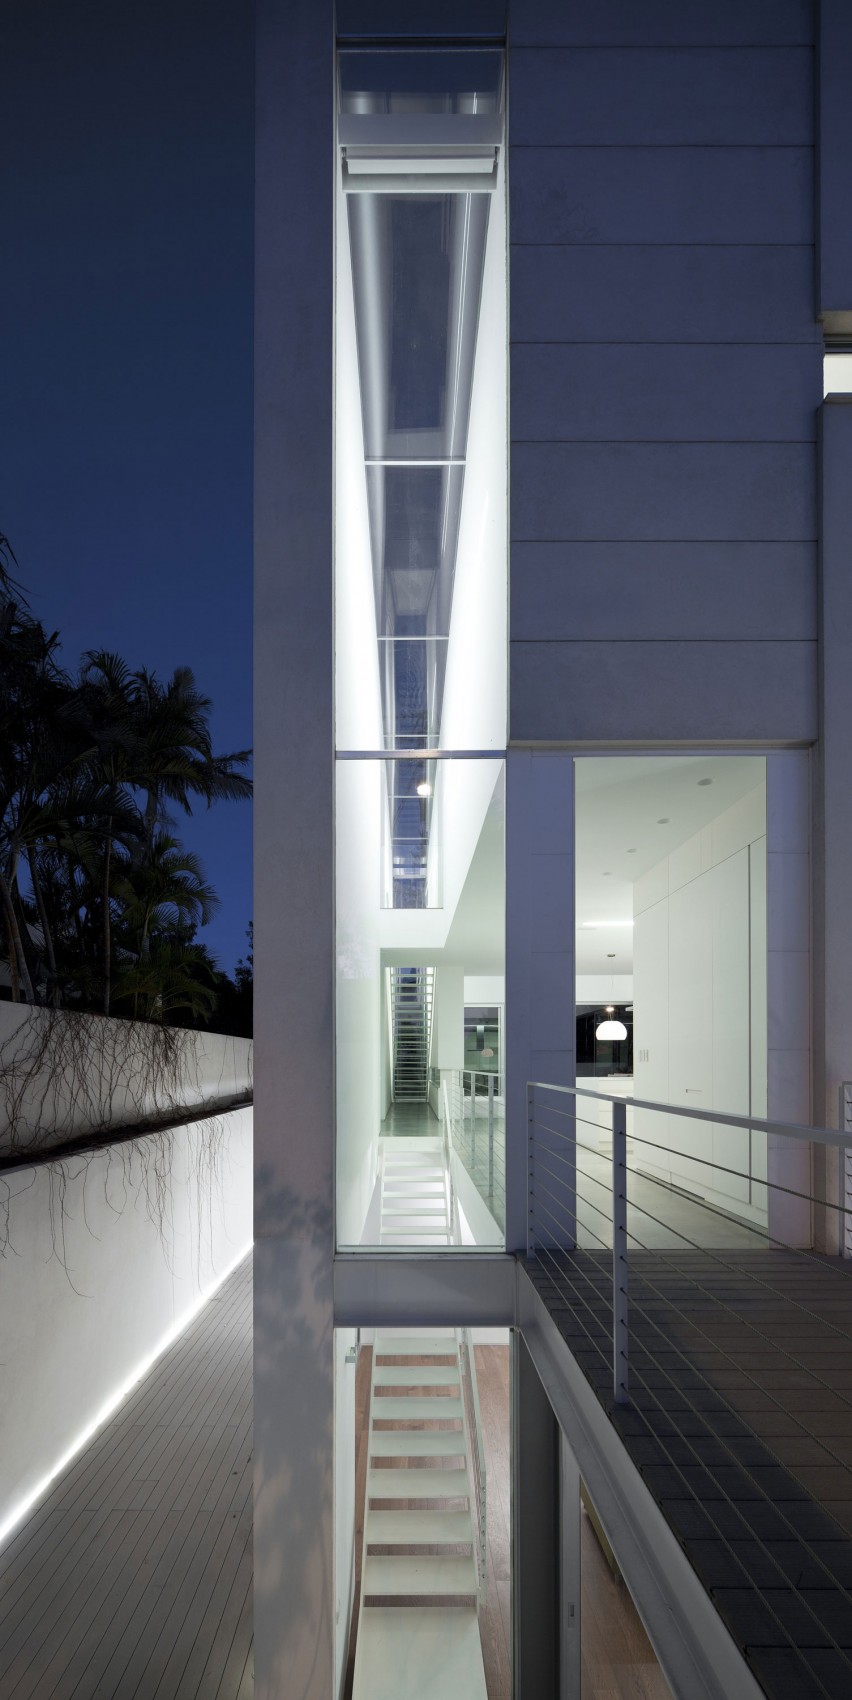 Наедине с природой и собой: величественный коттедж afeka house в тель-авиве от архитекторов axelrod и pitsou kedem